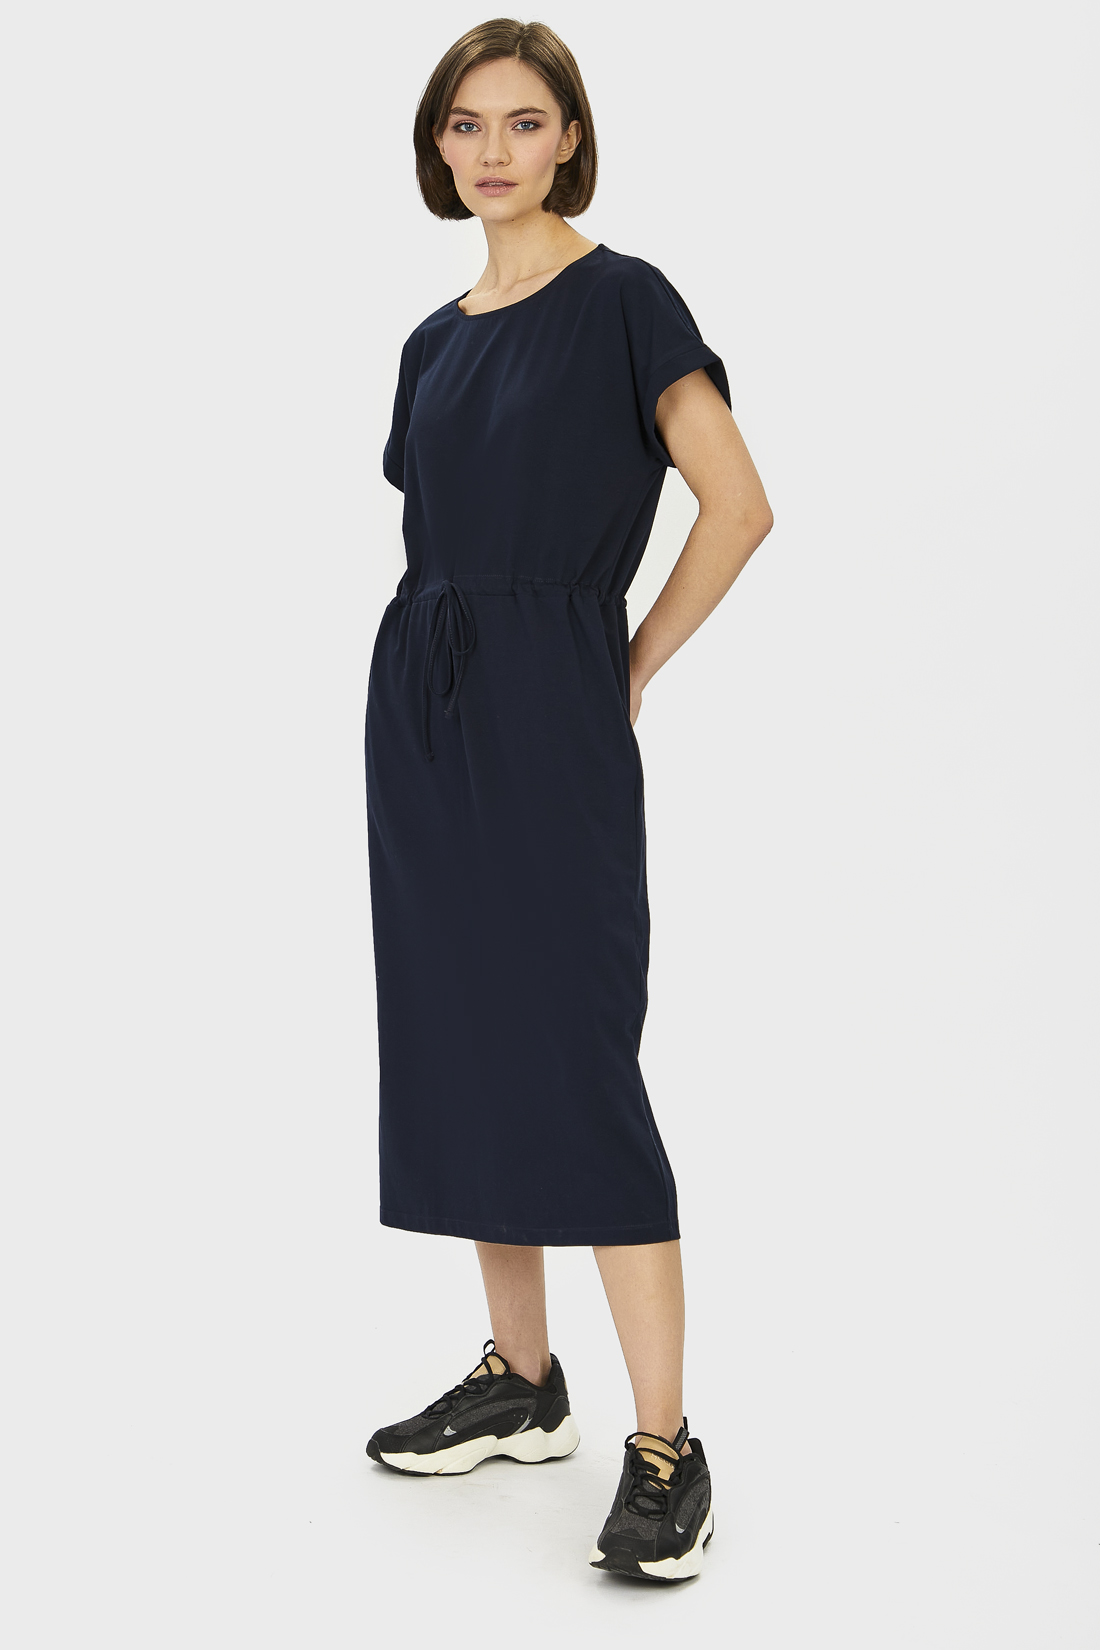 фото Повседневное платье женское baon b451203 синее xl